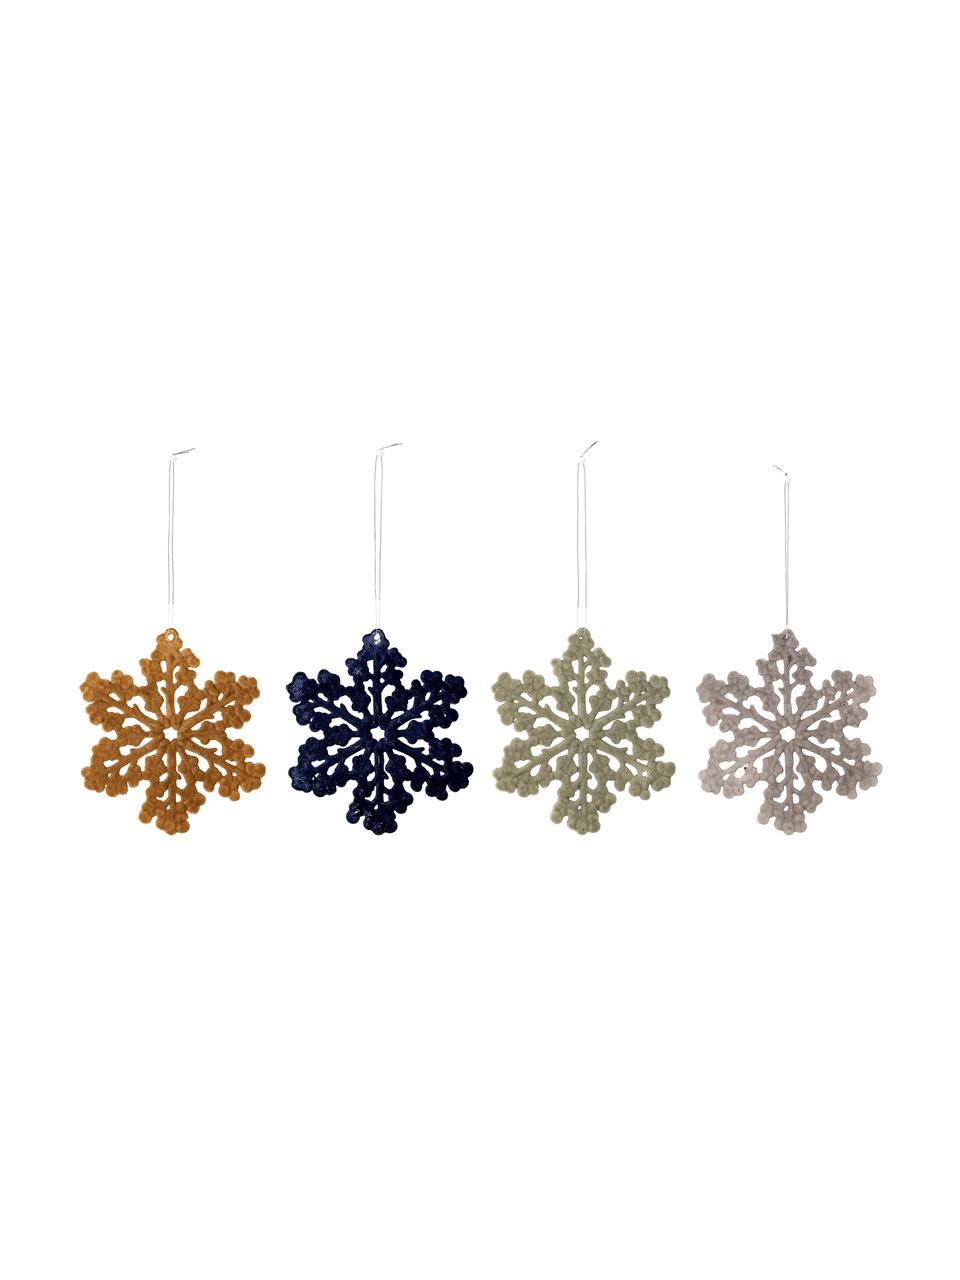 Adornos navideños irrompibles Snowflakes, 4 uds., Plástico, poliéster, Multicolor, Ø 12 cm